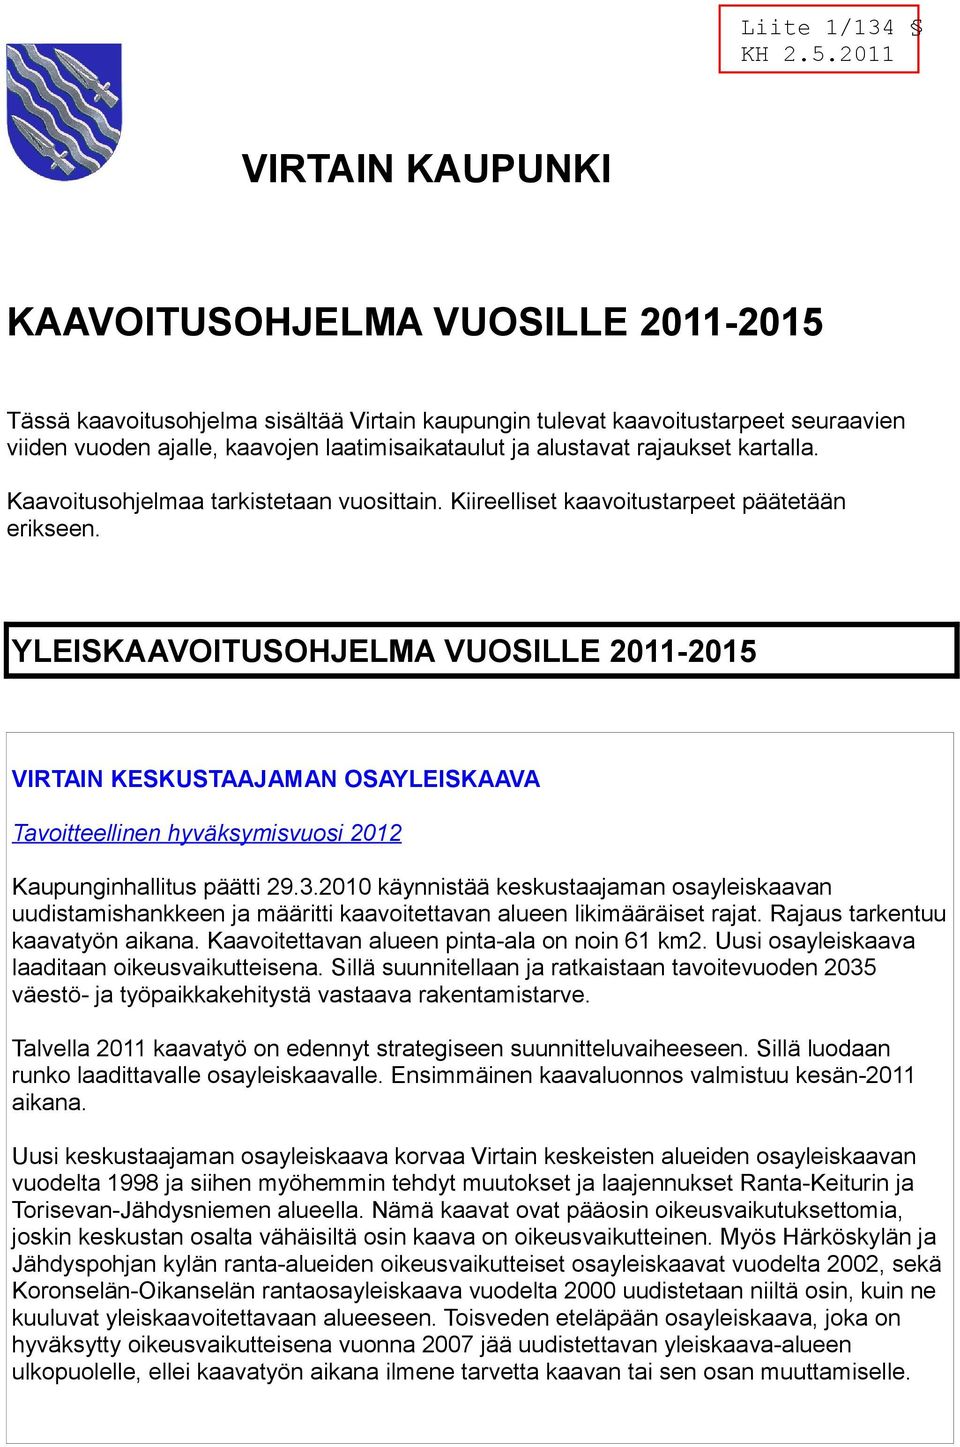 YLEISKVOITUSOHJELM VUOSILLE 2011-2015 VIRTIN KESKUSTJMN OSYLEISKV Tavoitteellinen hyväksymisvuosi 2012 Kaupunginhallitus päätti 29.3.